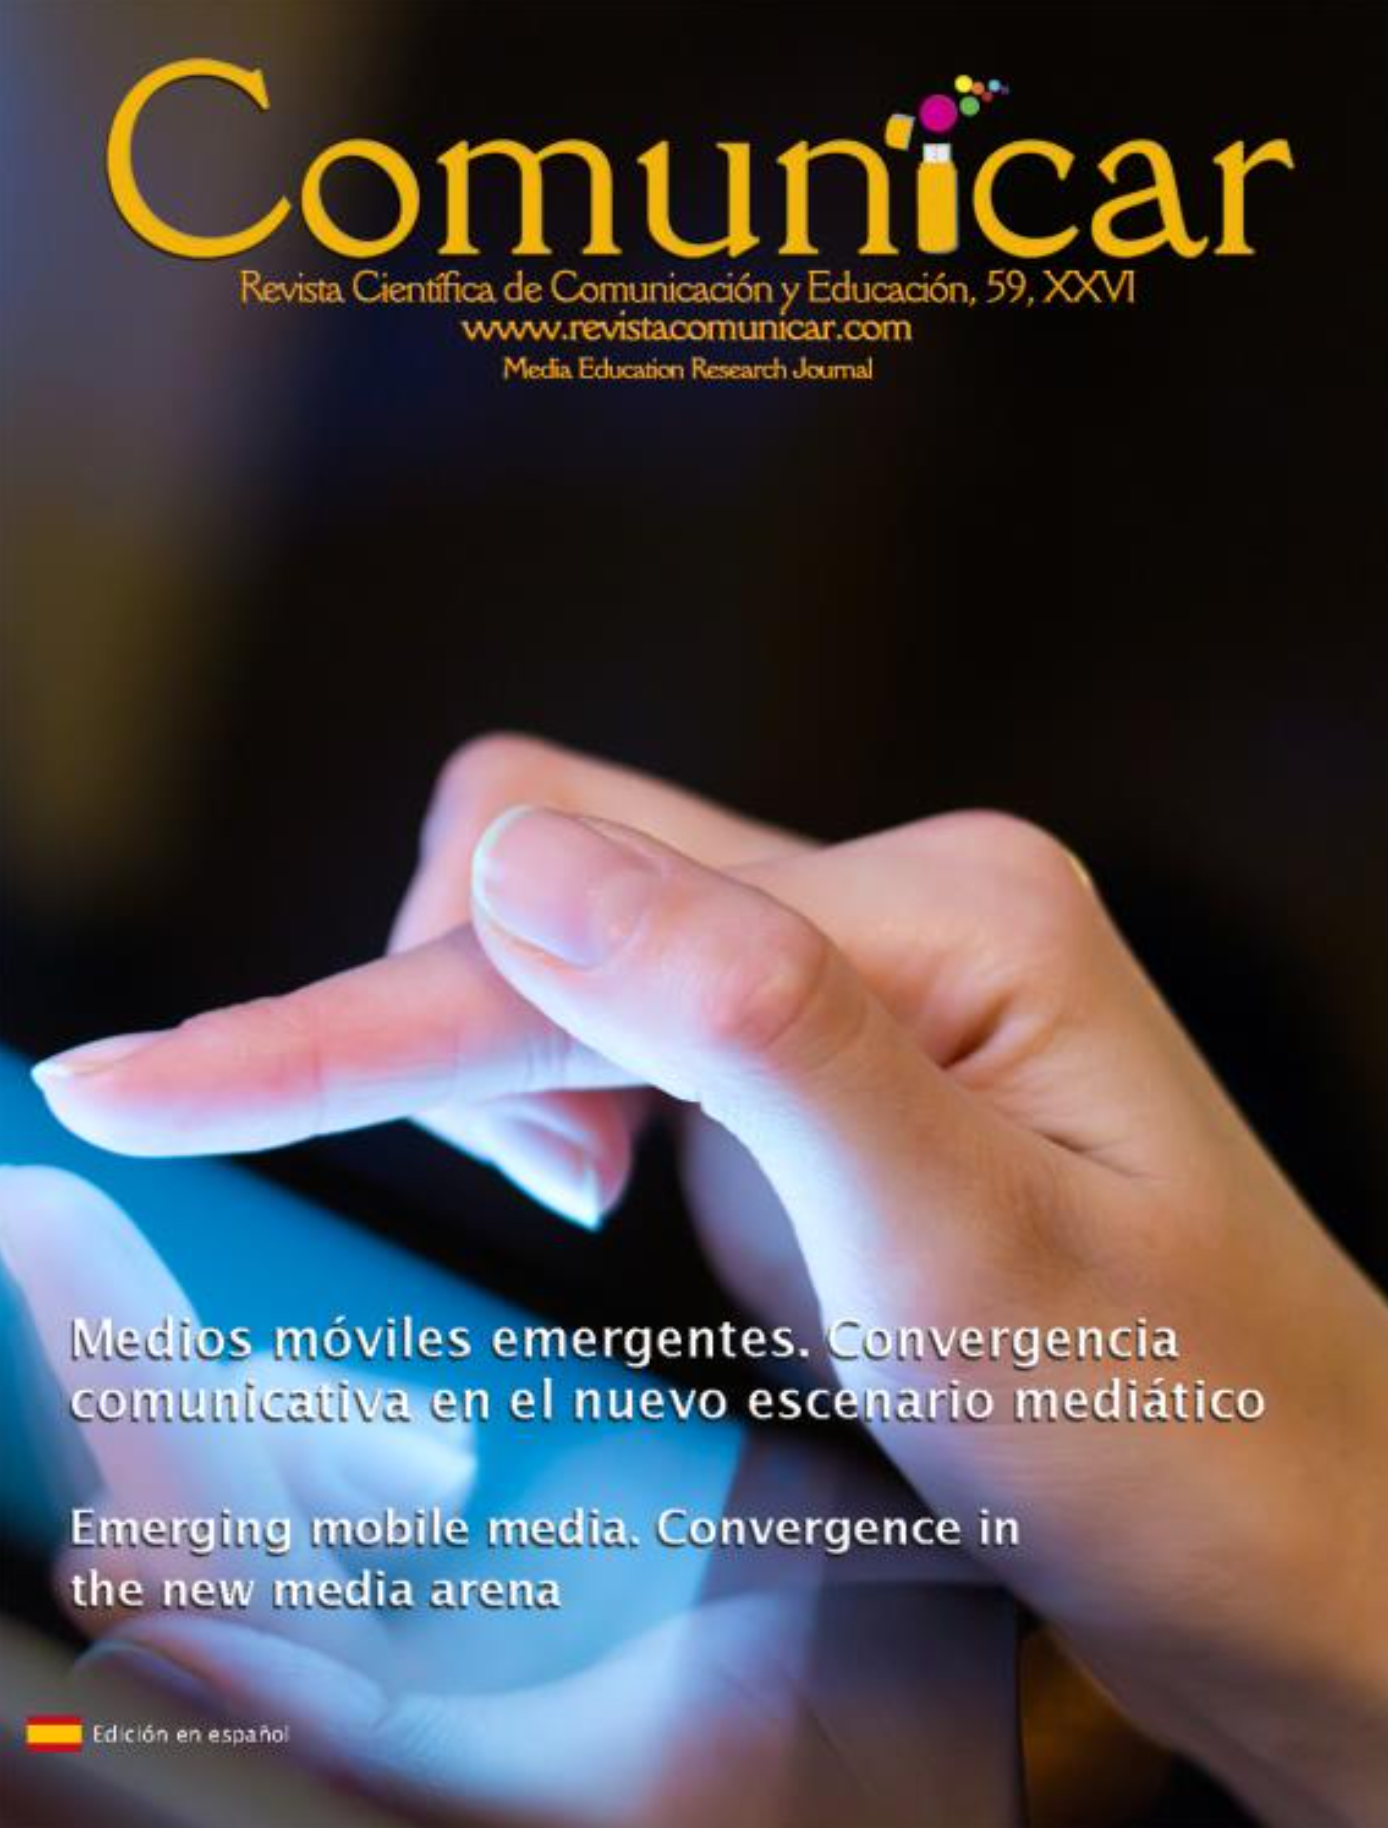 Comunicar CFP “Medios móviles emergentes”